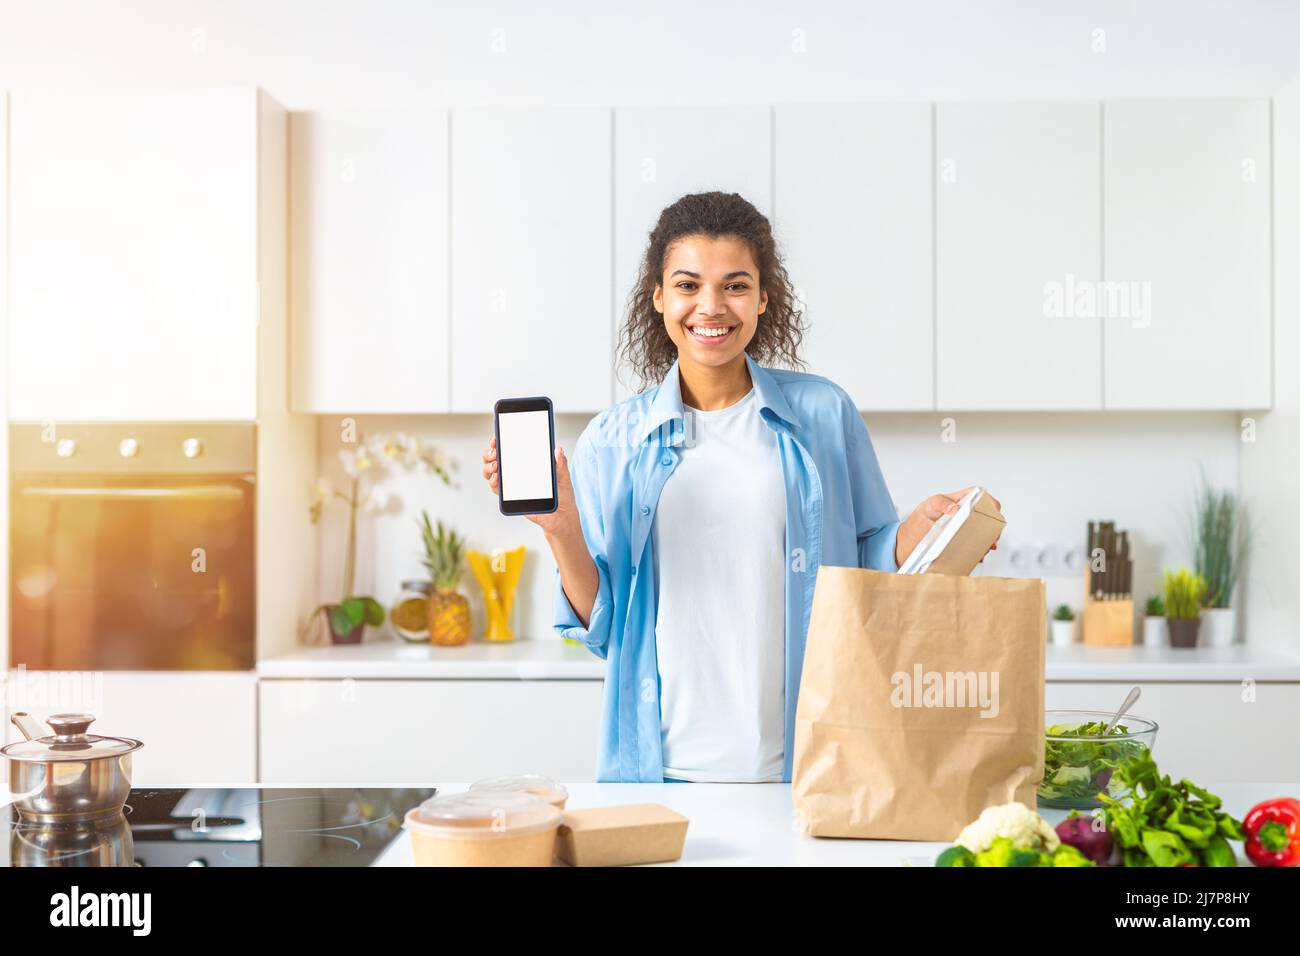 Lächelnde Frau mit einer Einkaufstasche, die online über das Smartphone bestellt und direkt zu Hause geliefert wurde Stockfoto